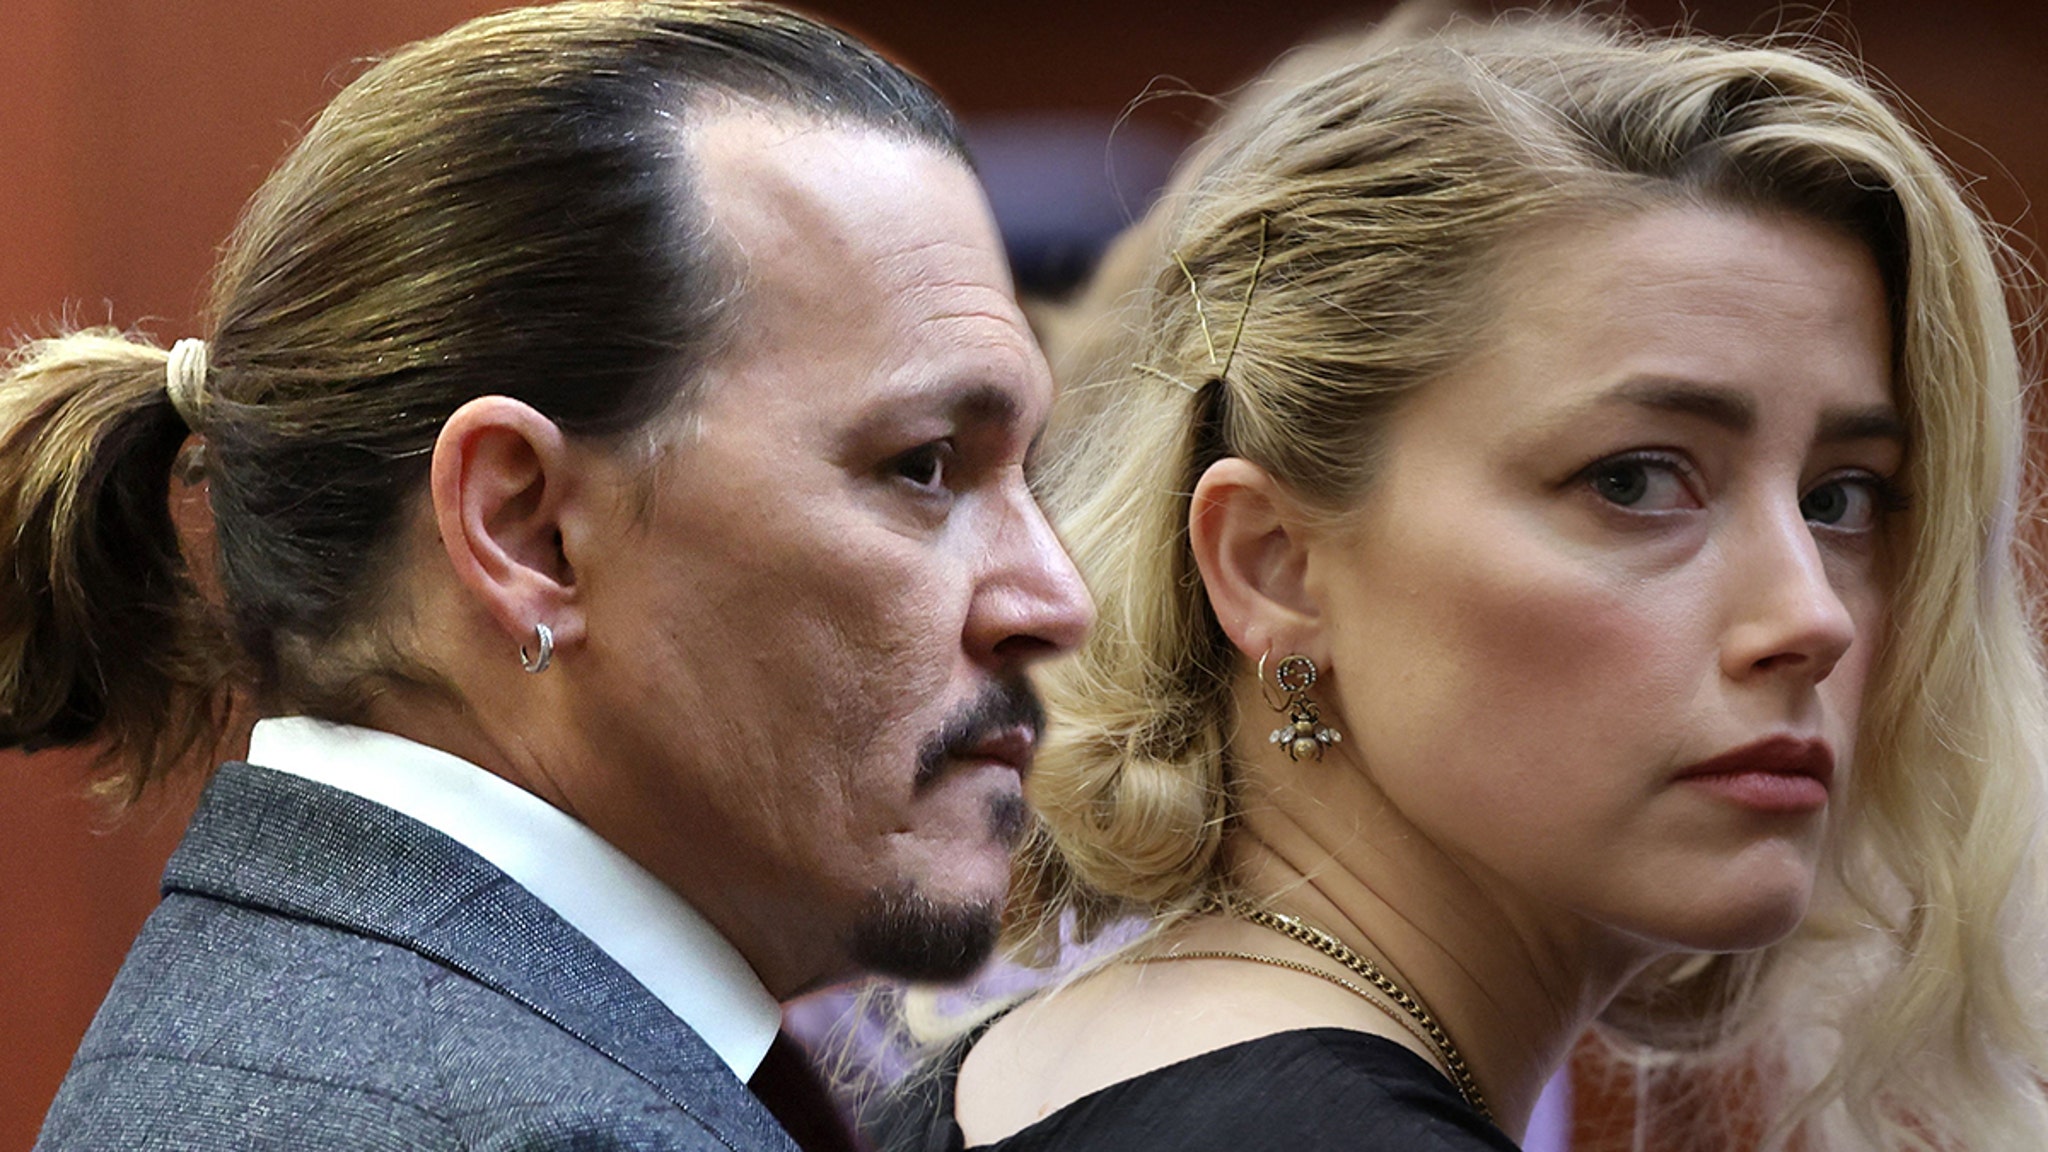 Johnny Depp drängt Amber Heard zurück, mein 10-Millionen-Dollar-Urteil war fair